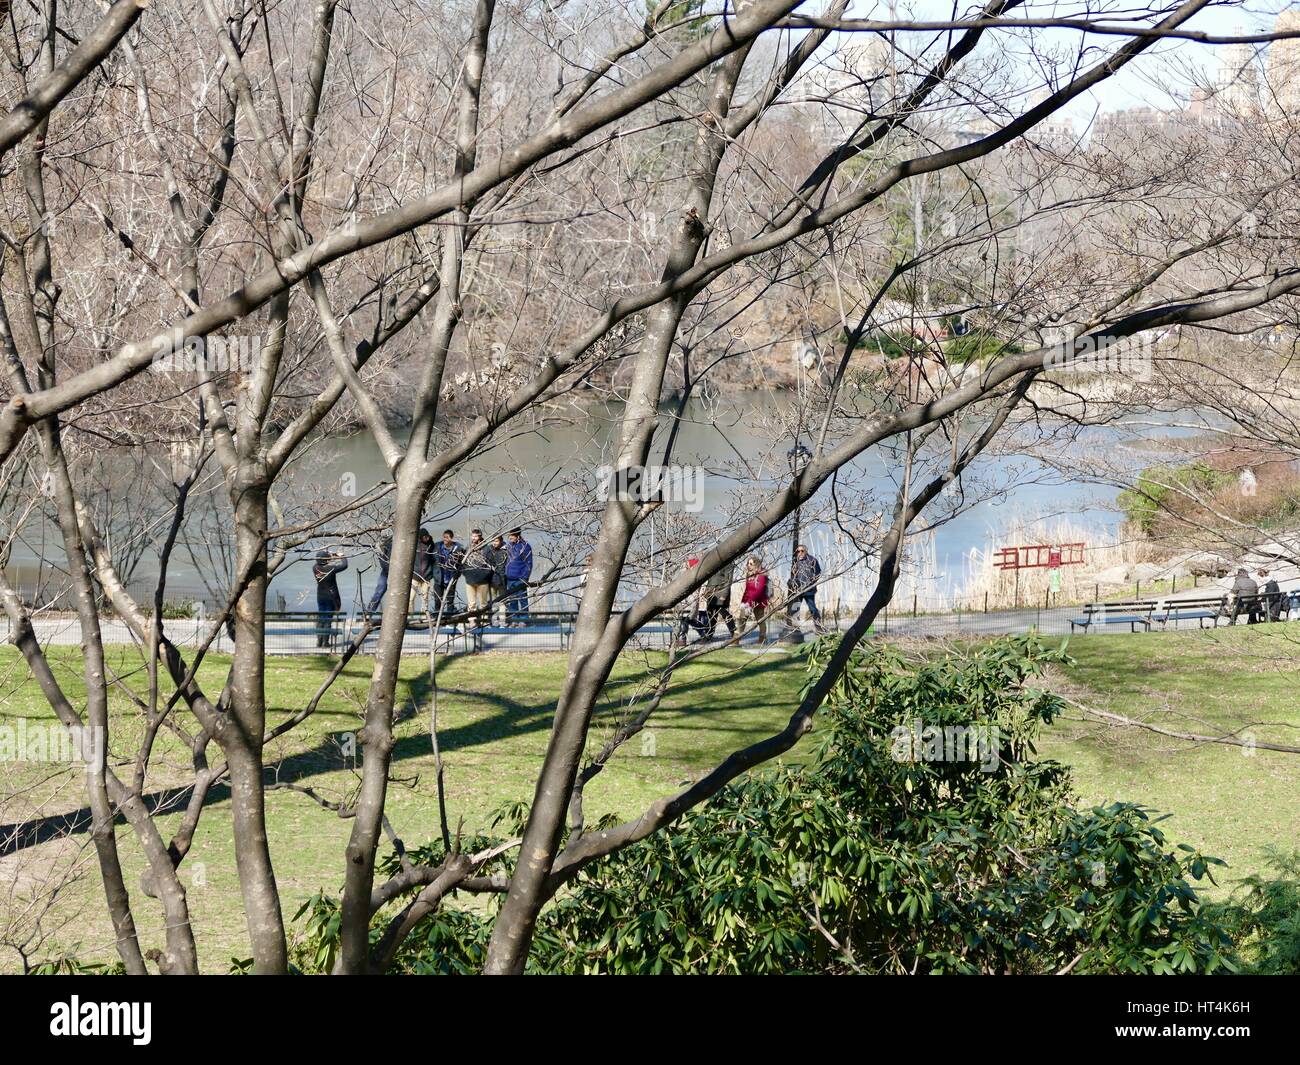 Les visiteurs qui prennent des photos dans la distance. L'étang, Central Park, New York City, New York, USA. Banque D'Images